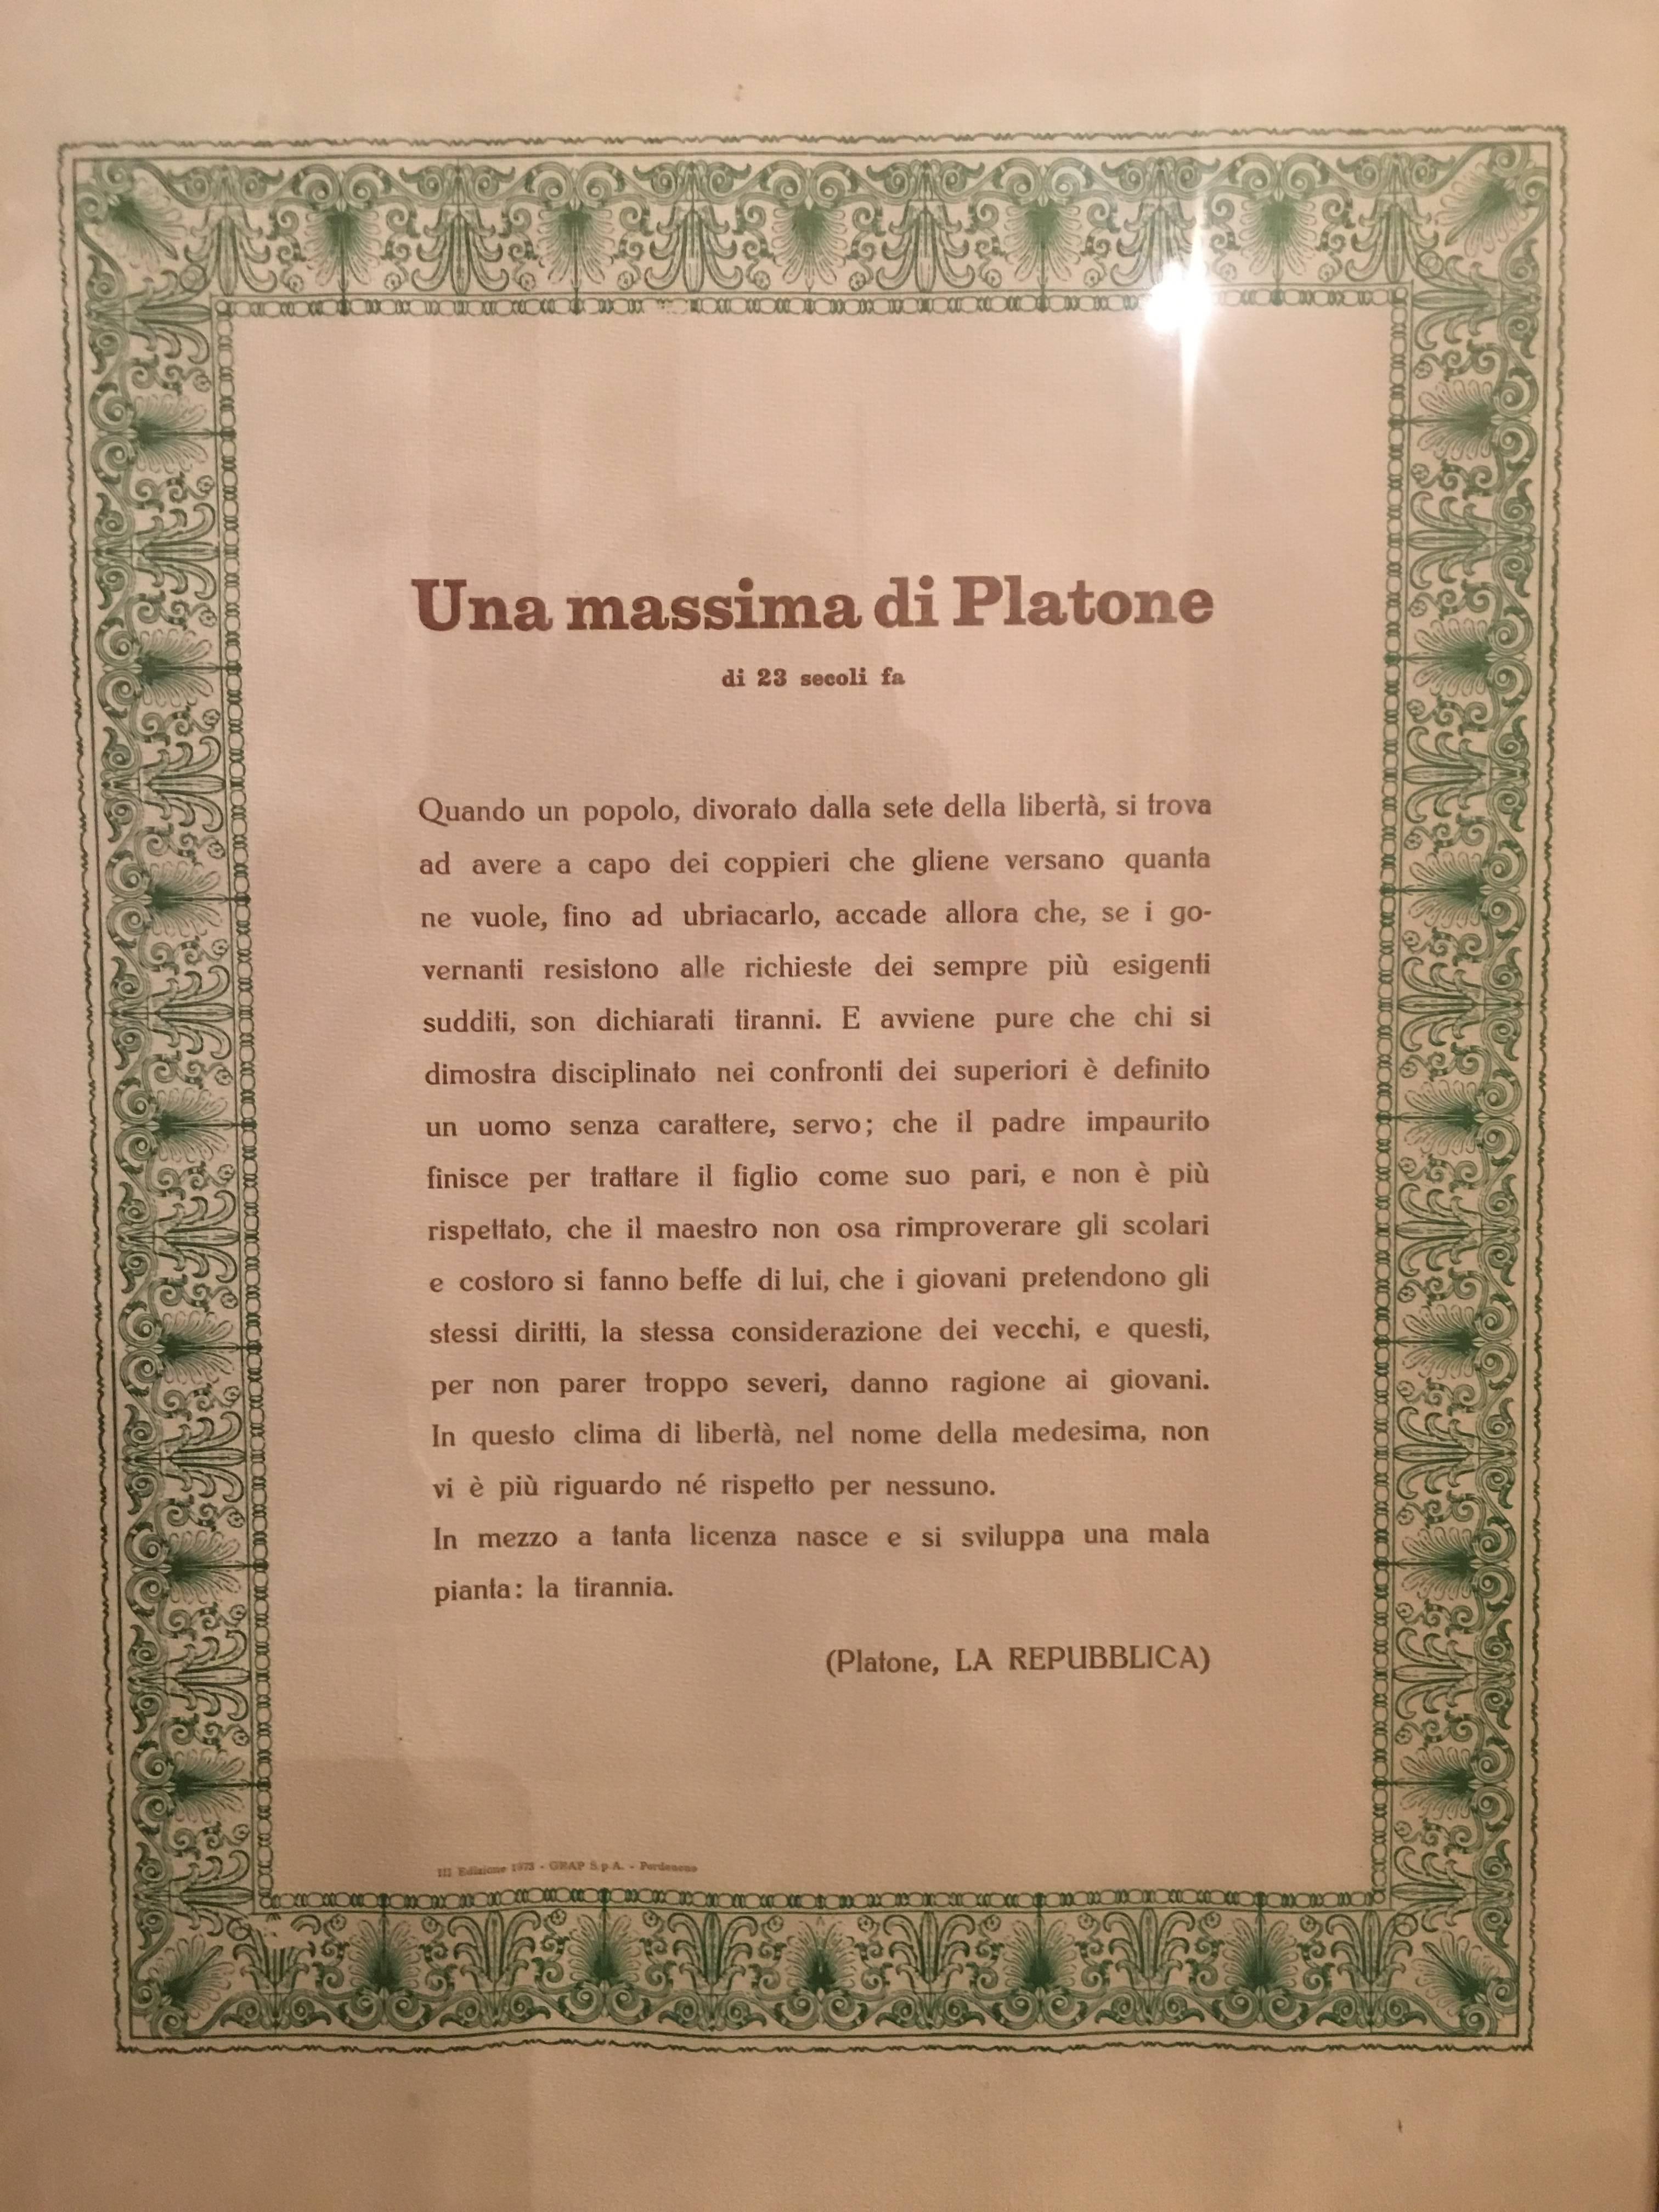 Greco Roman Plato's Phrase / Una Massima di Platone